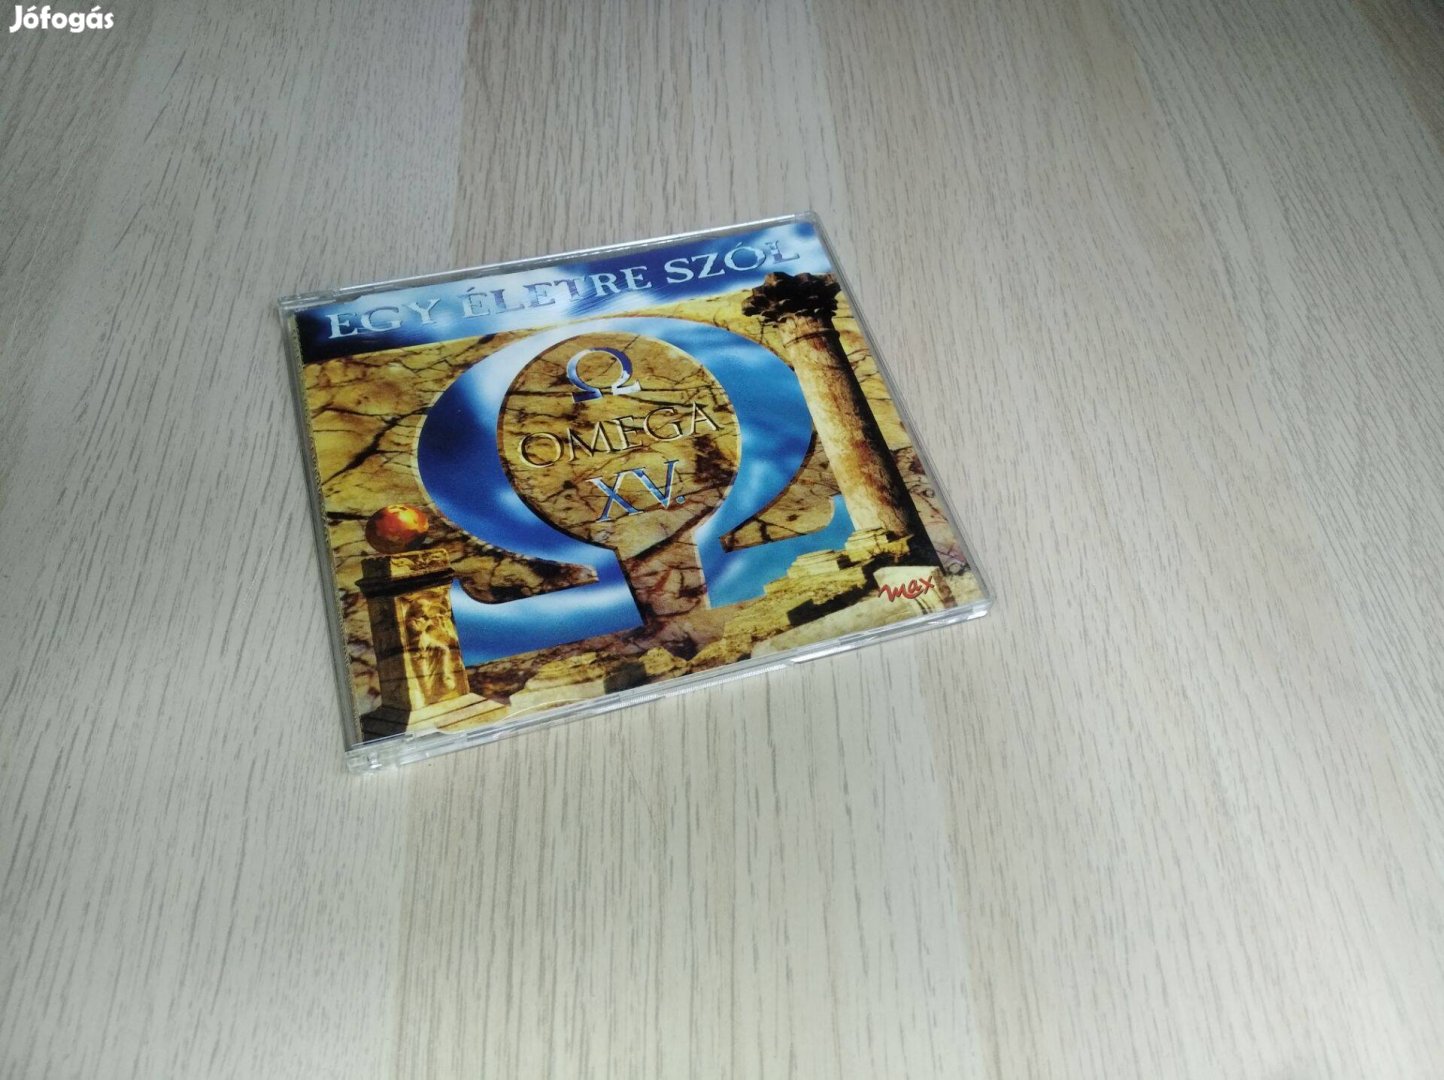 Omega - Egy Életre Szól / Single CD 1998